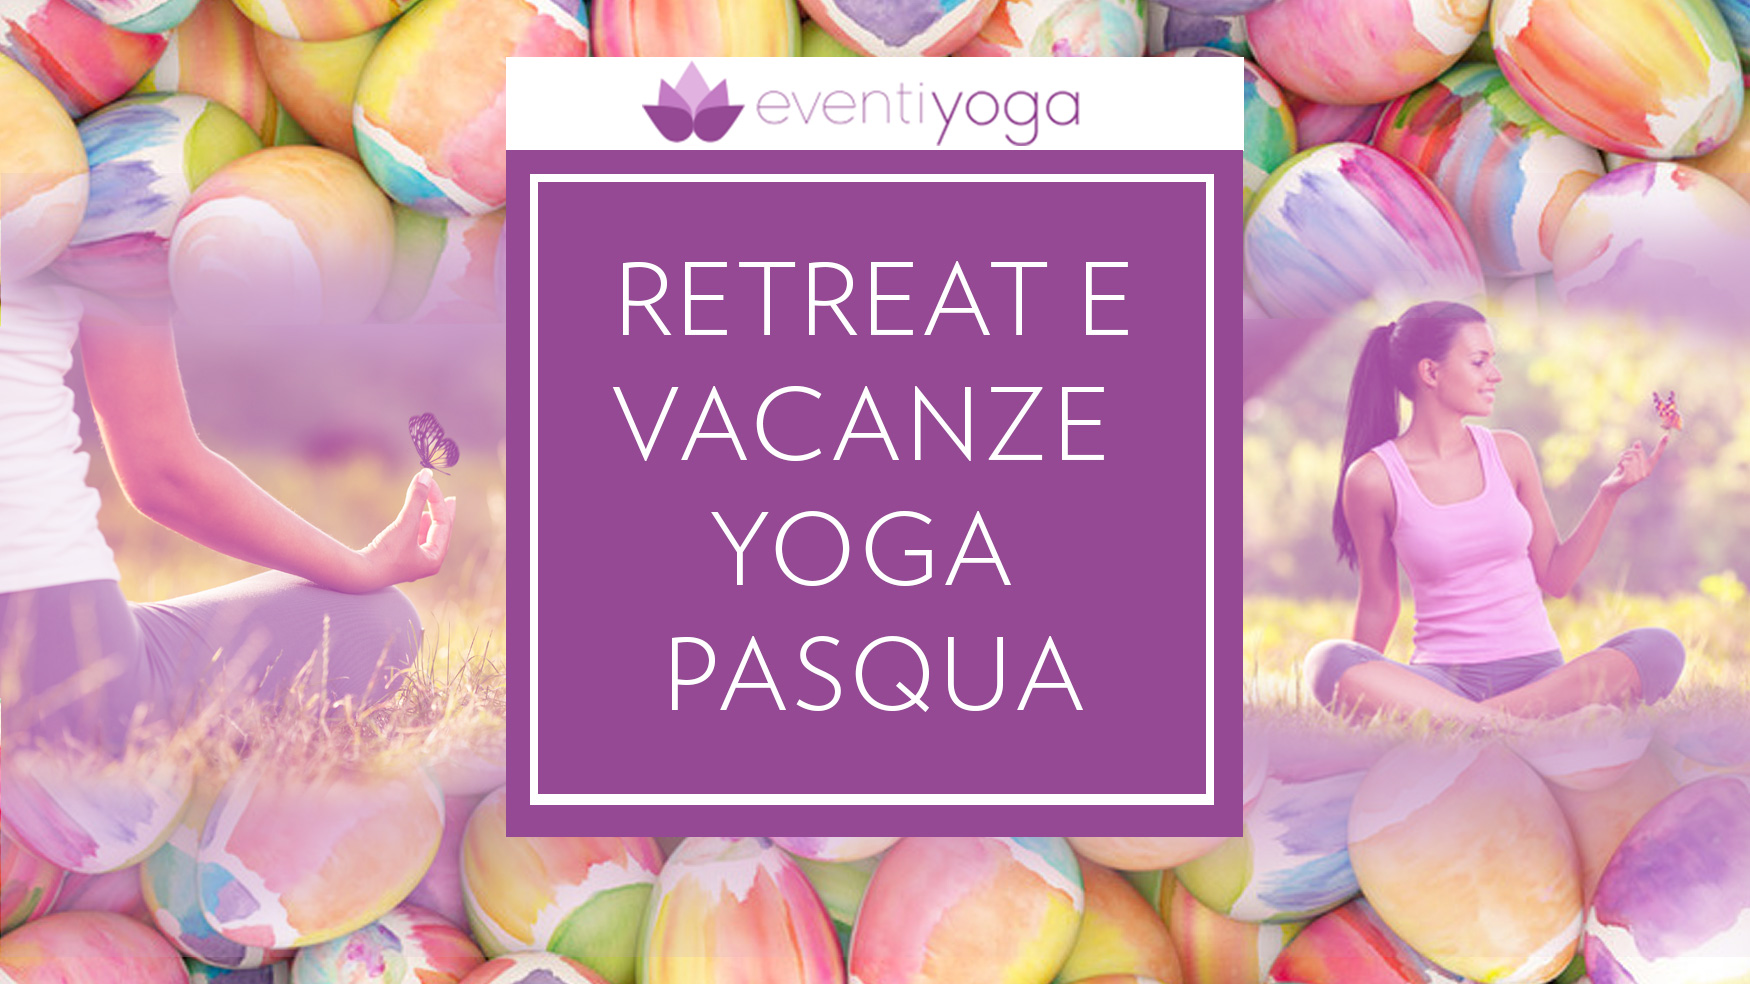 Vacanza Yoga Pasqua: offerte e destinazioni